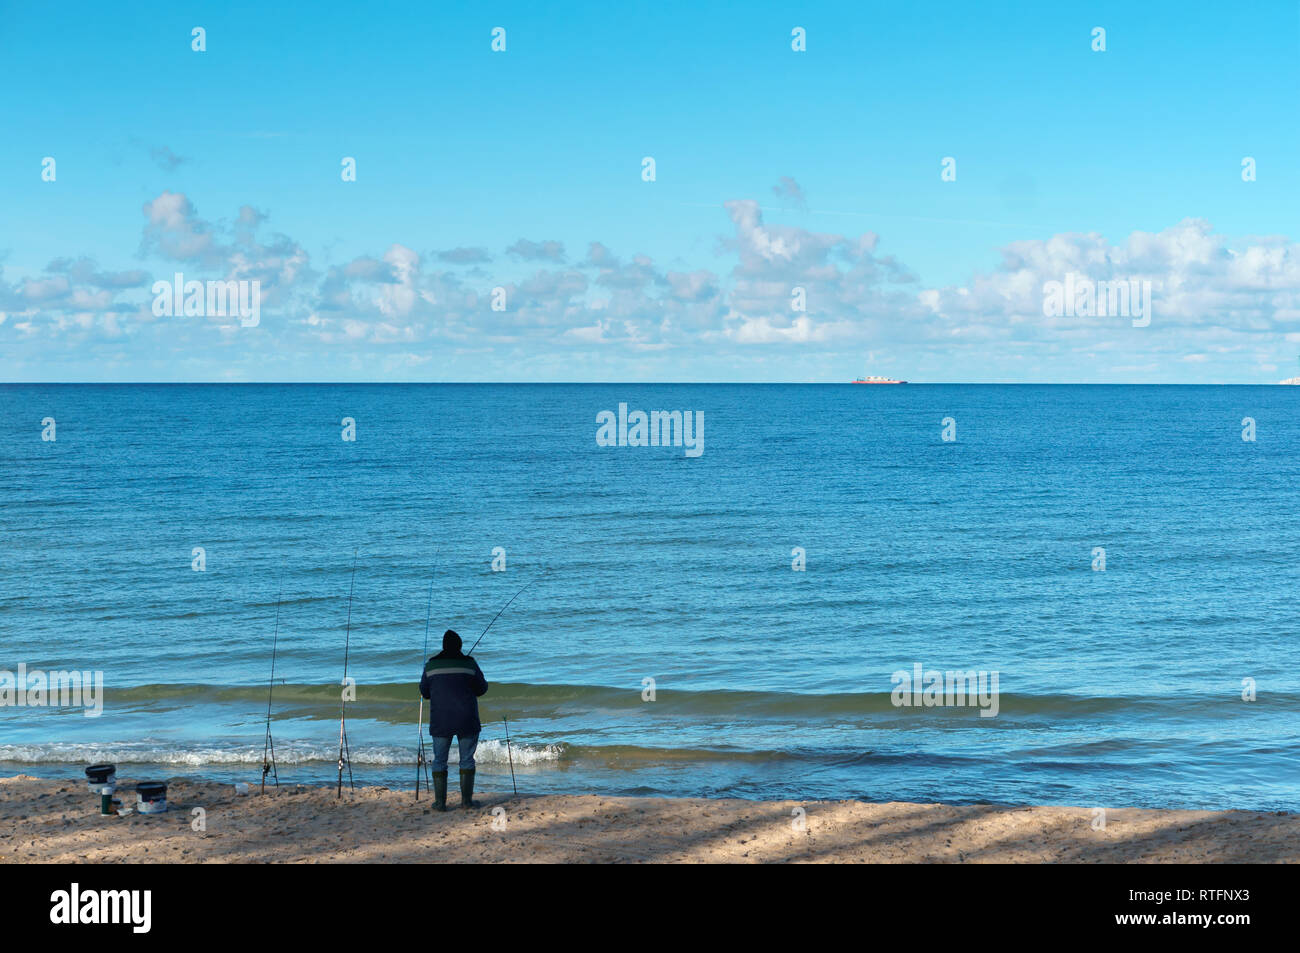 Pêcheur au bord de la mer, plusieurs cannes à pêche d'un pêcheur, la mer Baltique, la région de Kaliningrad, Russie, le 21 octobre 2018 Banque D'Images